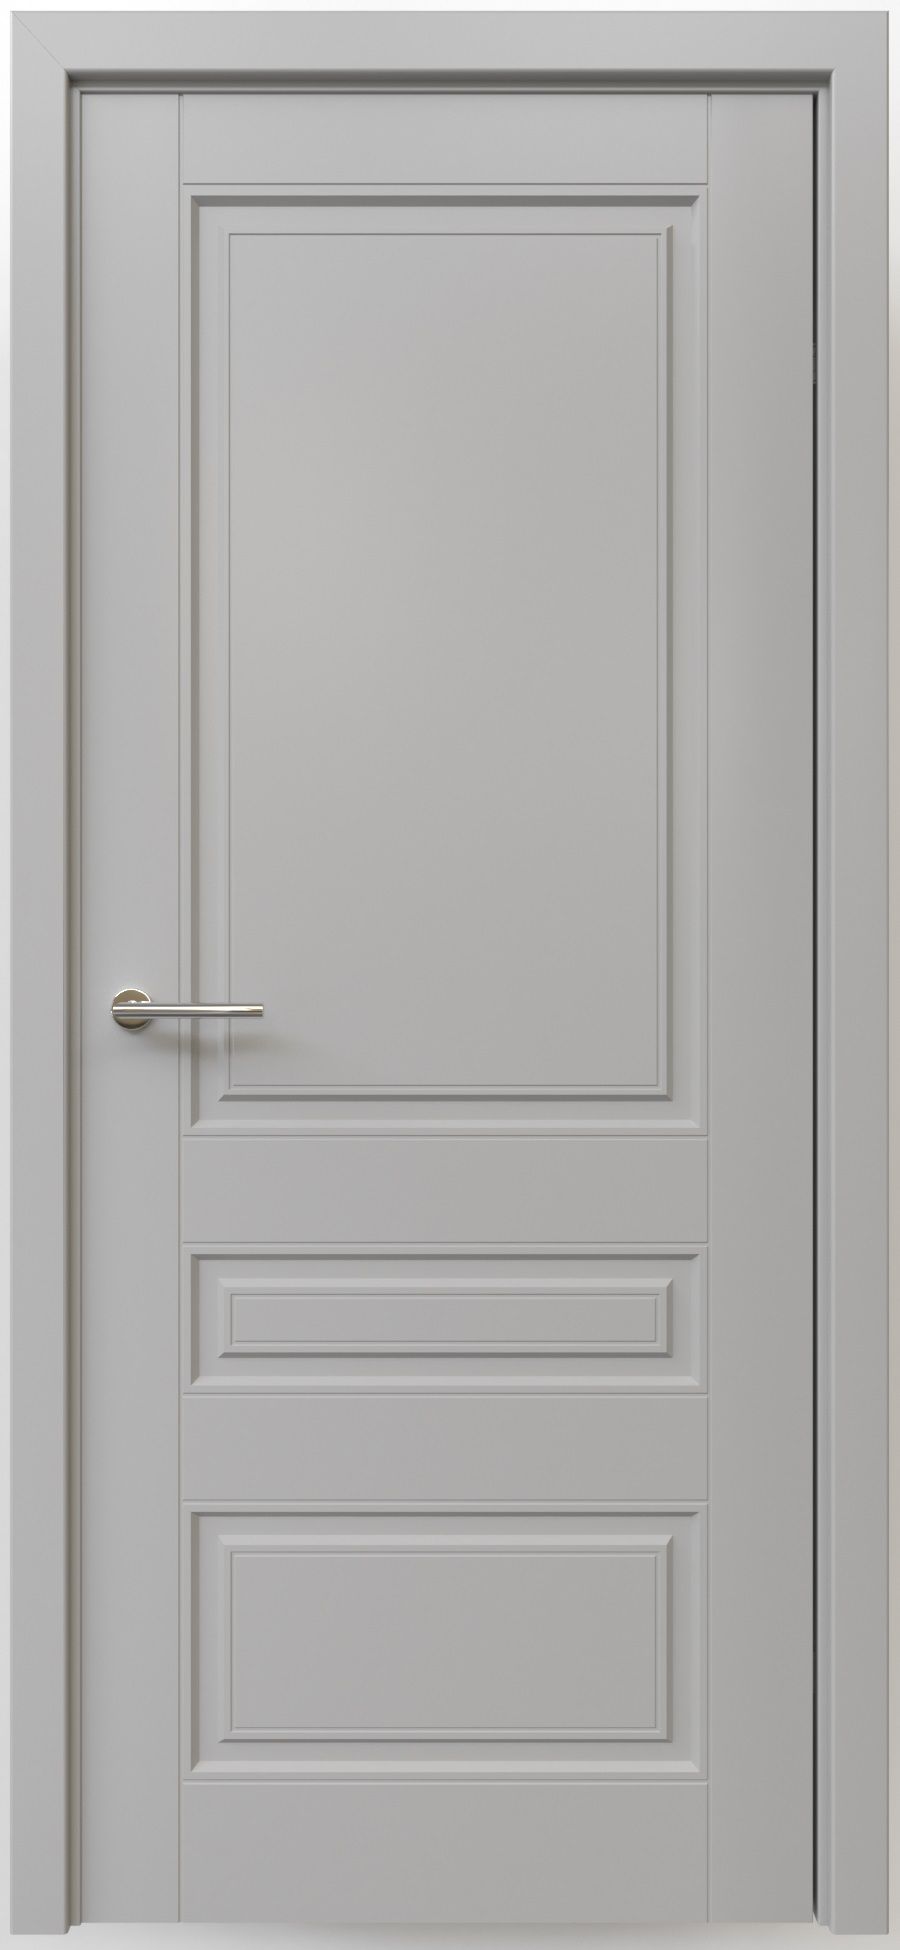 Полотно дверное глухое СХЕМА Эмаль-1 ПГ Эмаль Классика-3 900 серый (защелка маг.)